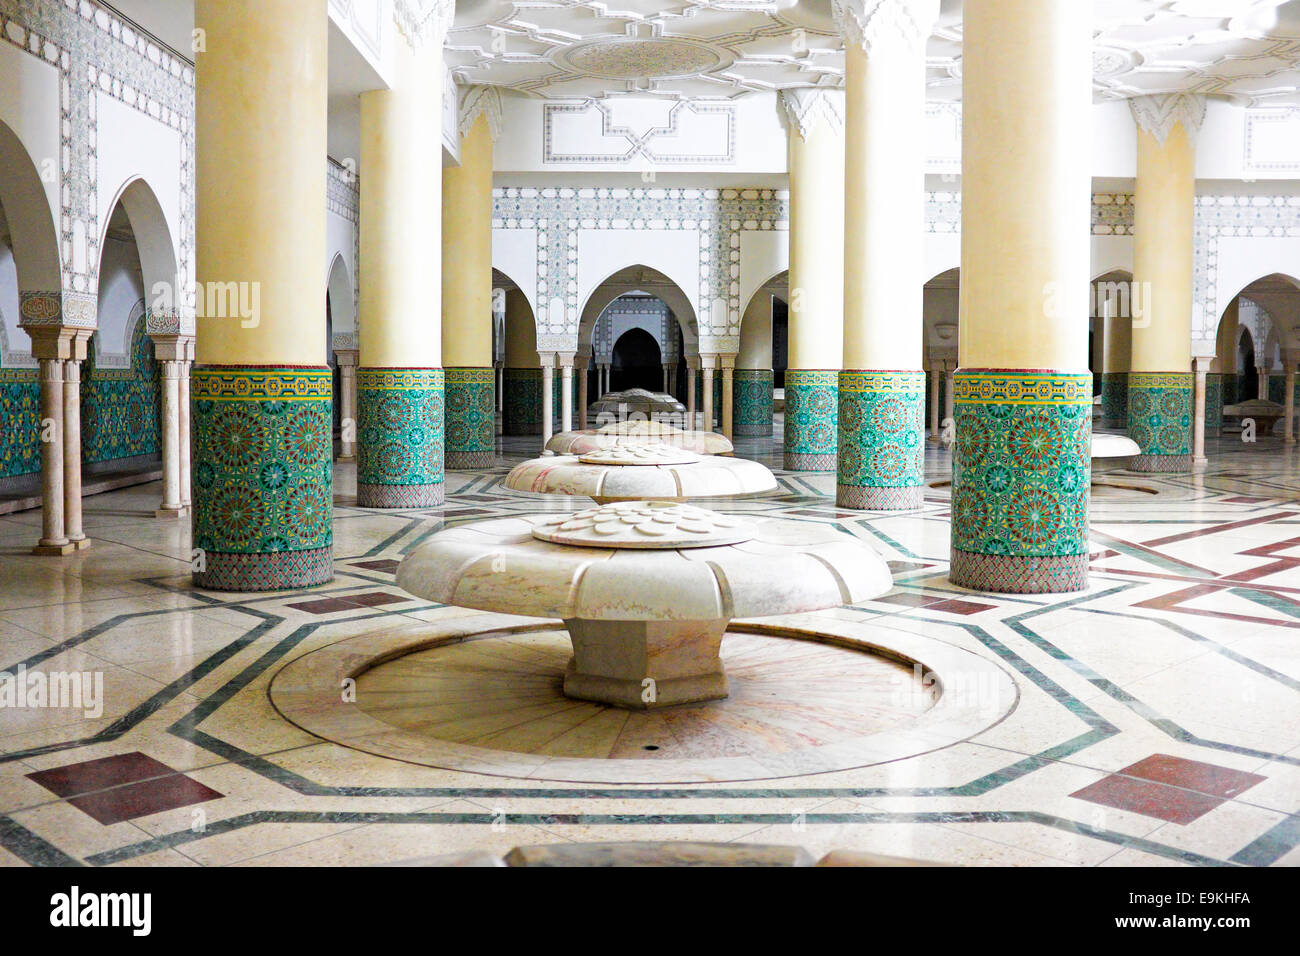 Arches d'intérieur et travaux de carreaux de mosaïque hammam bain turc dans la Mosquée Hassan II à Casablanca, Maroc. Banque D'Images